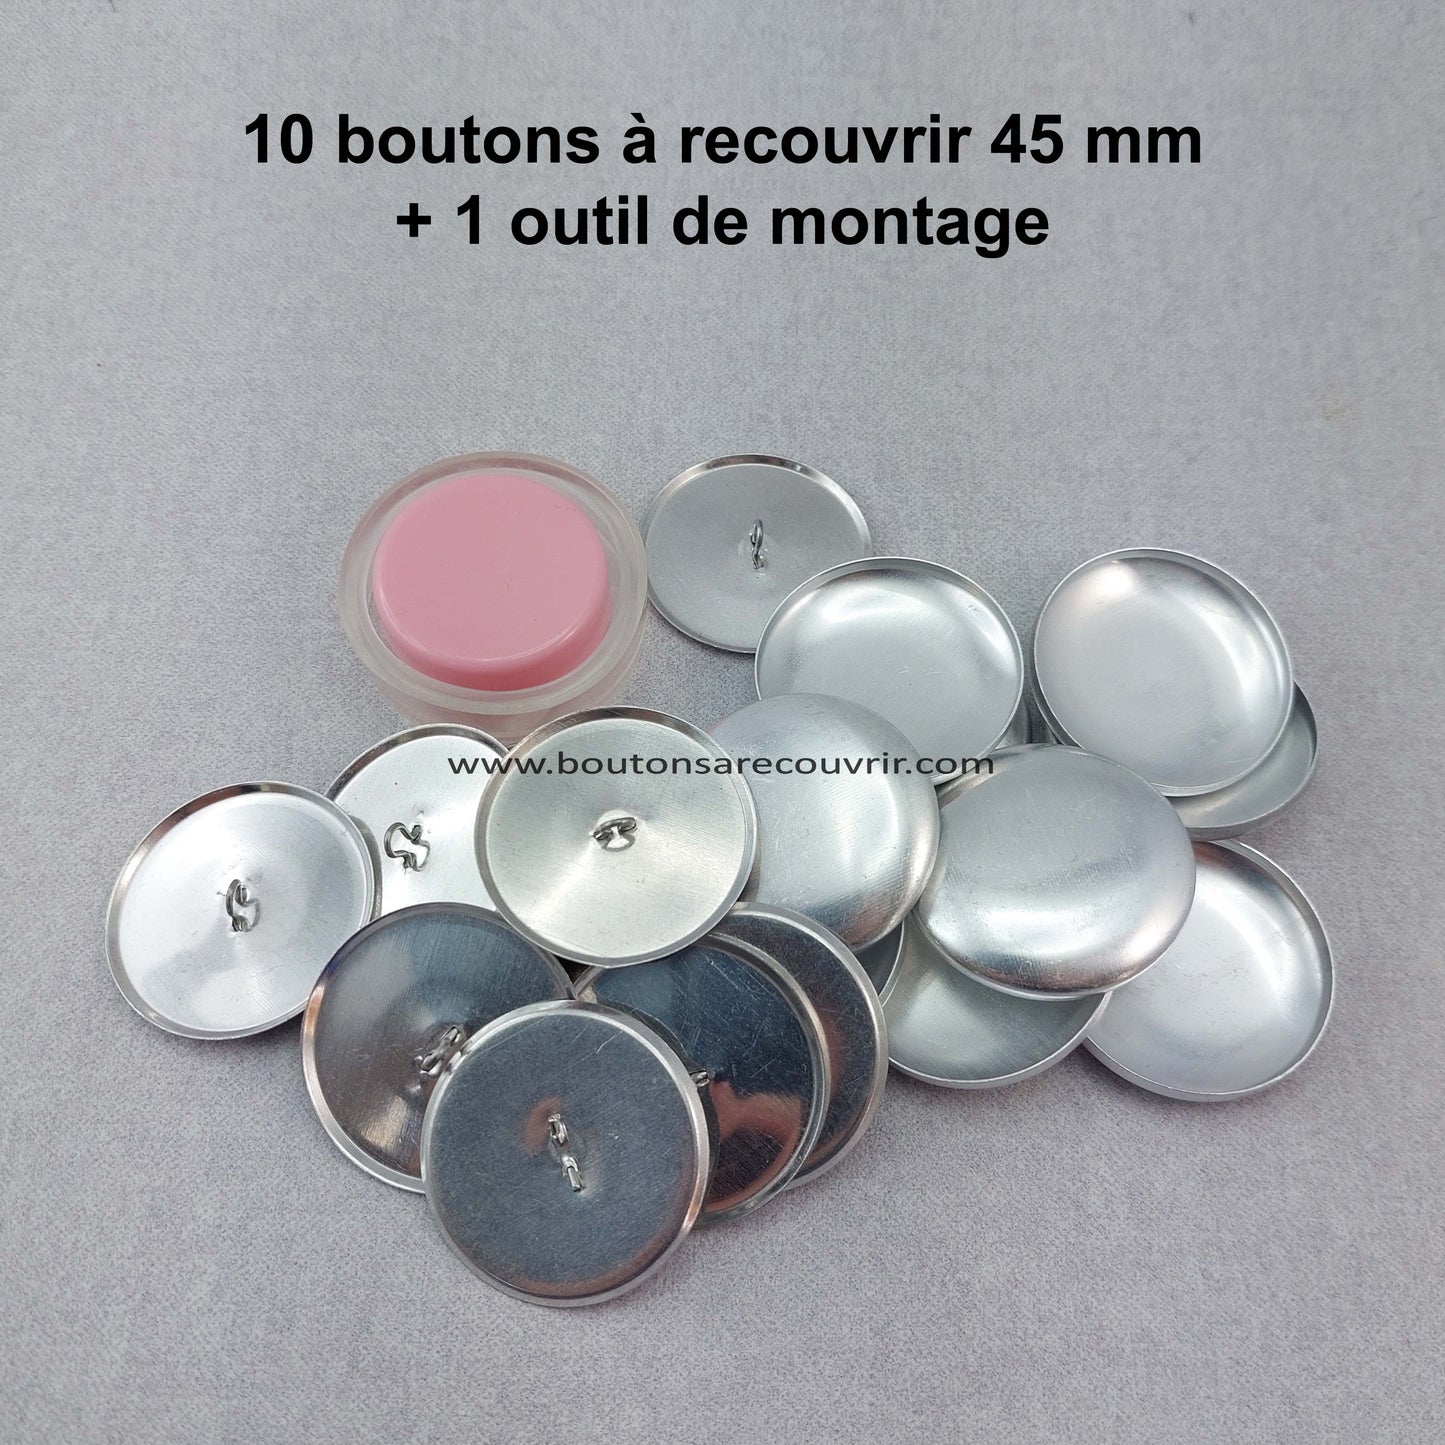 10 boutons à recouvrir 45 mm avec outil de montage